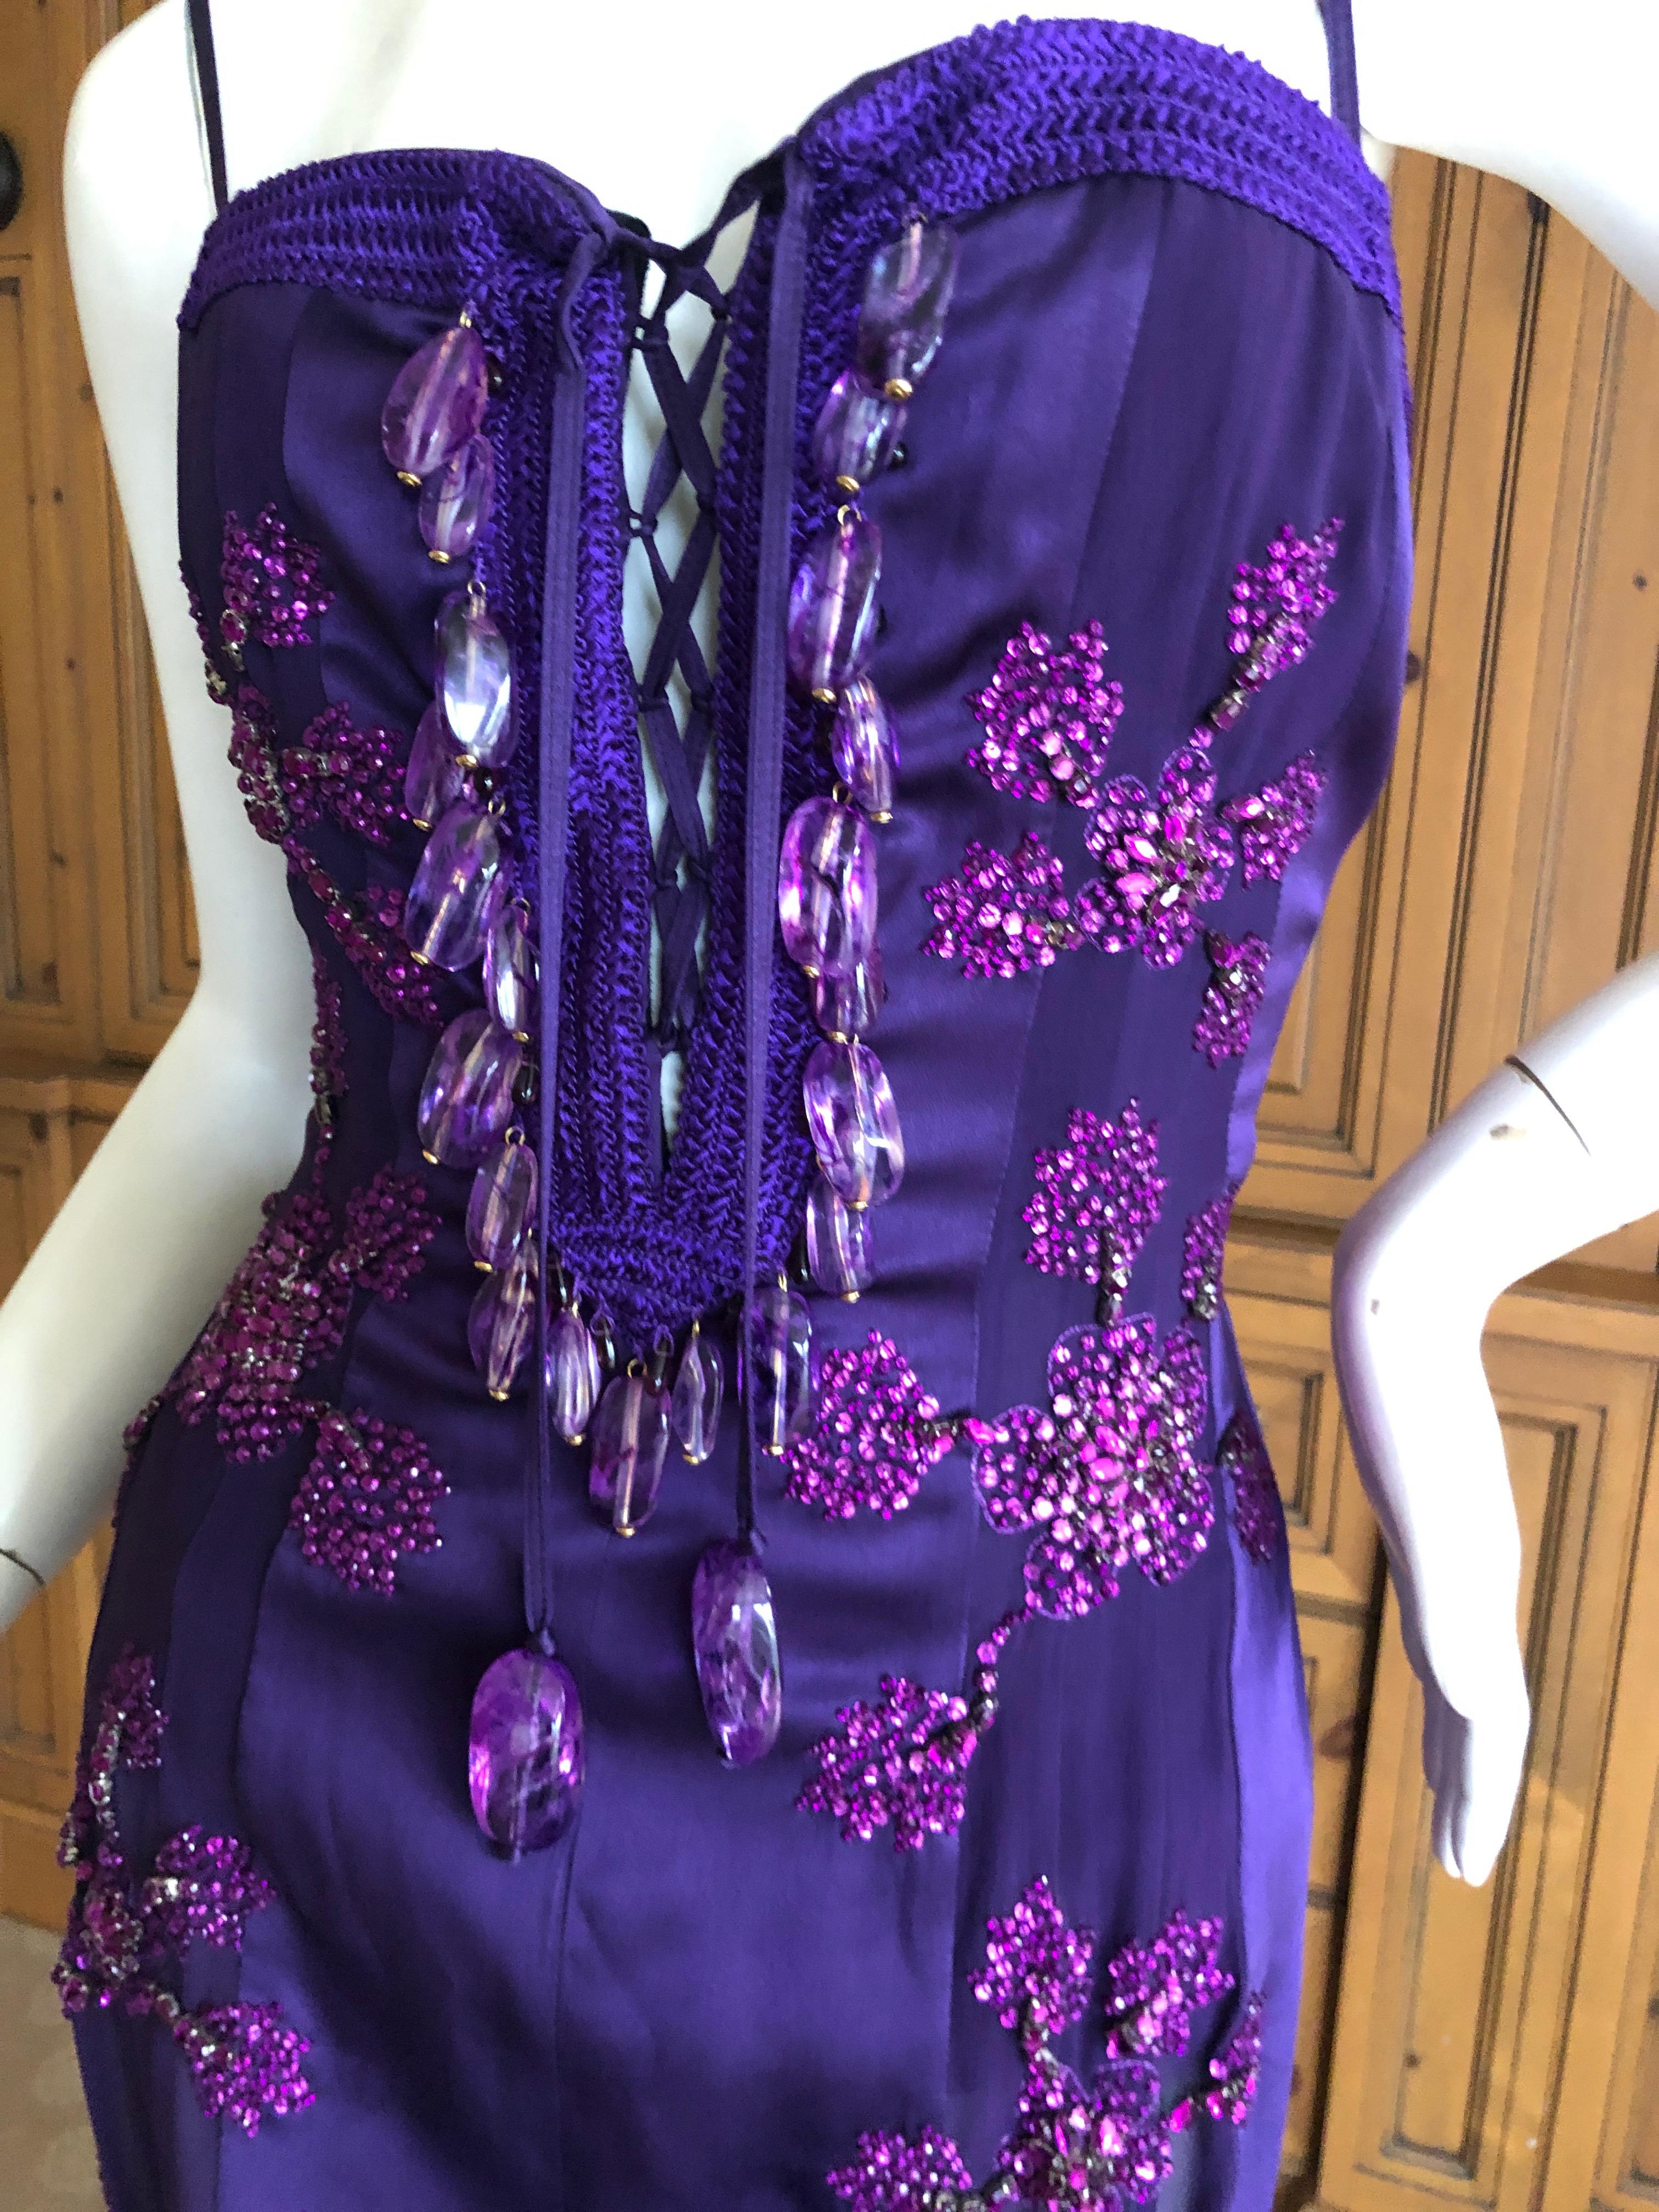 Emanuel Ungaro Amethyst Embellished Vintage Silk Evening Dress by Peter Dundas For Sale 1